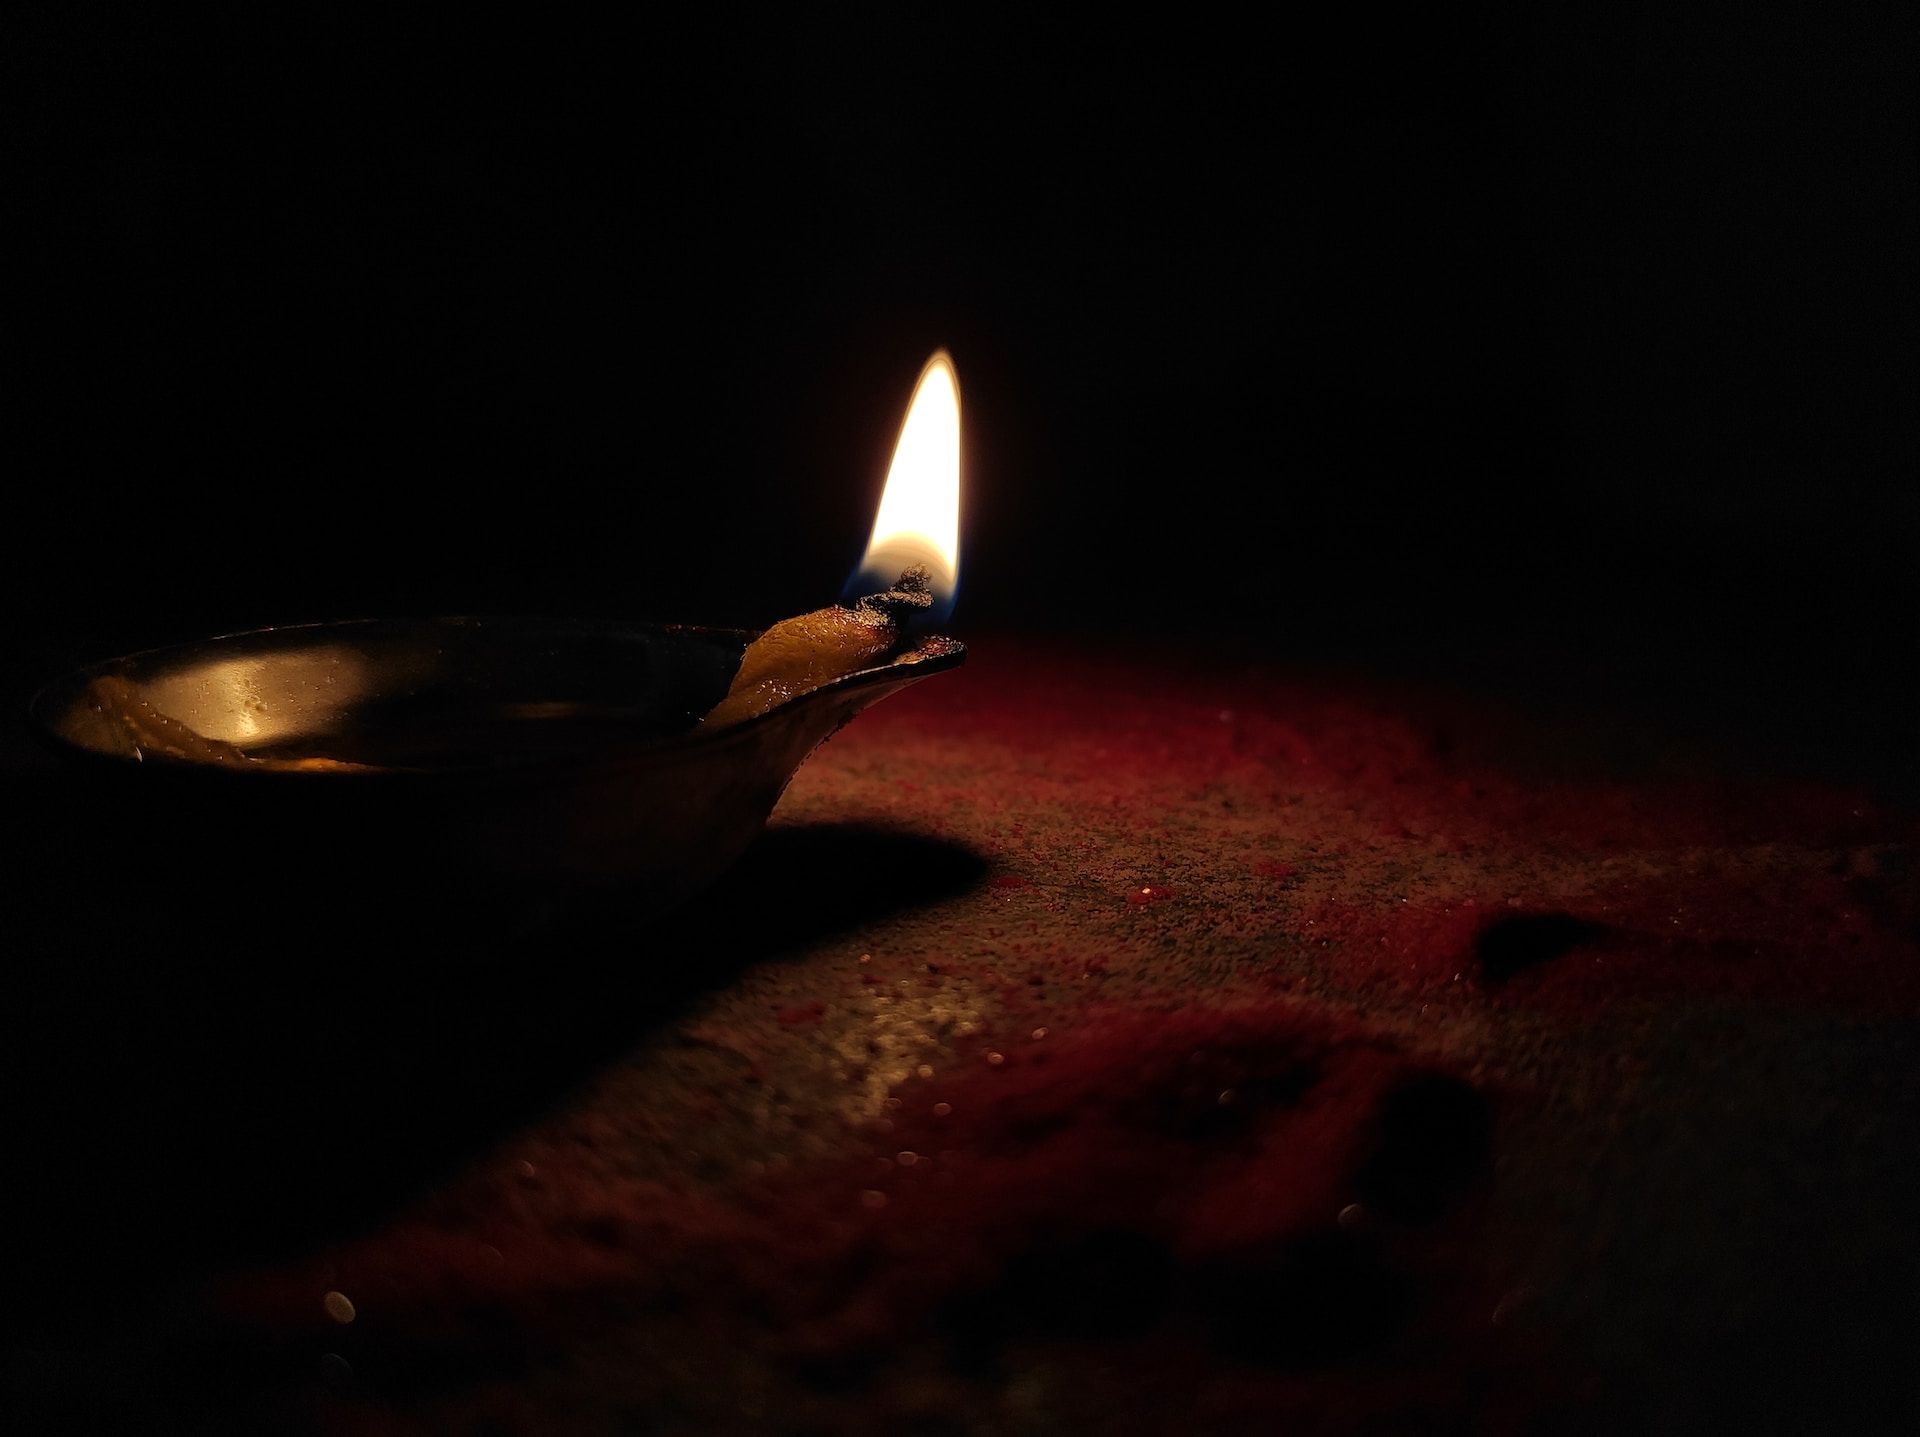 flamme d'une lampe à huile dans la nuit - Photo de Ritabrata Dans sur https://unsplash.com/fr/photos/bougie-allumee-sur-table-en-bois-brun-kpaBHvDE7aQ